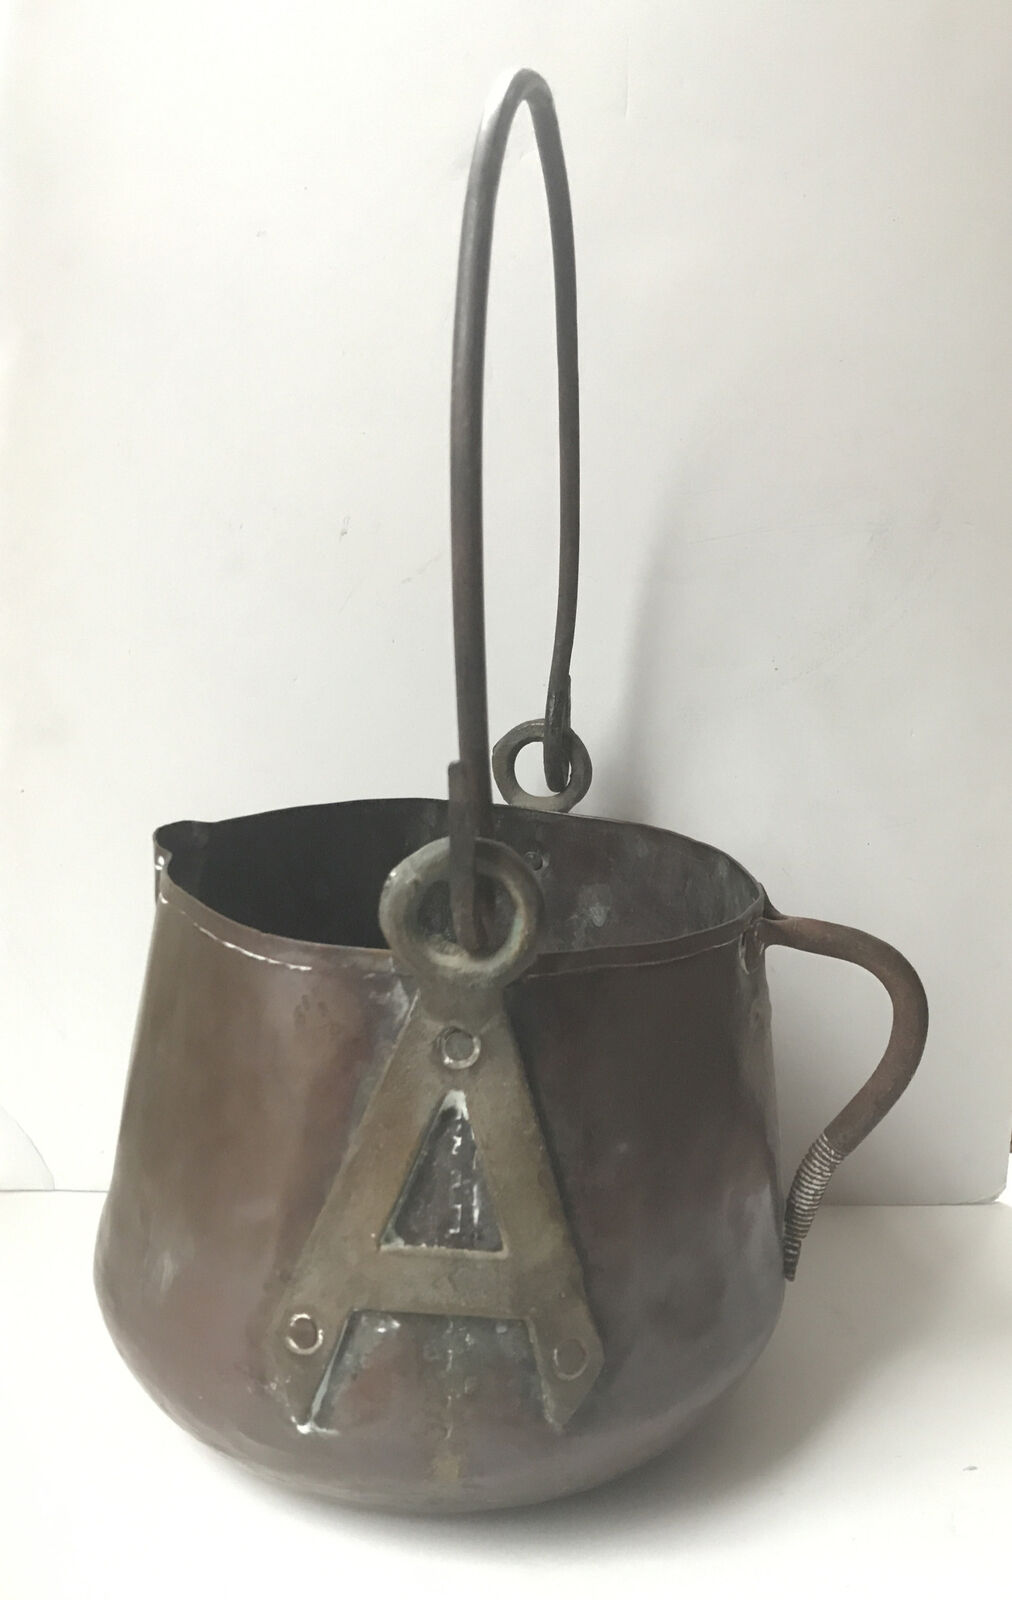 Antique Large Copper Pot with Iron Handles Vintage Hearth Primitive Boho Decor